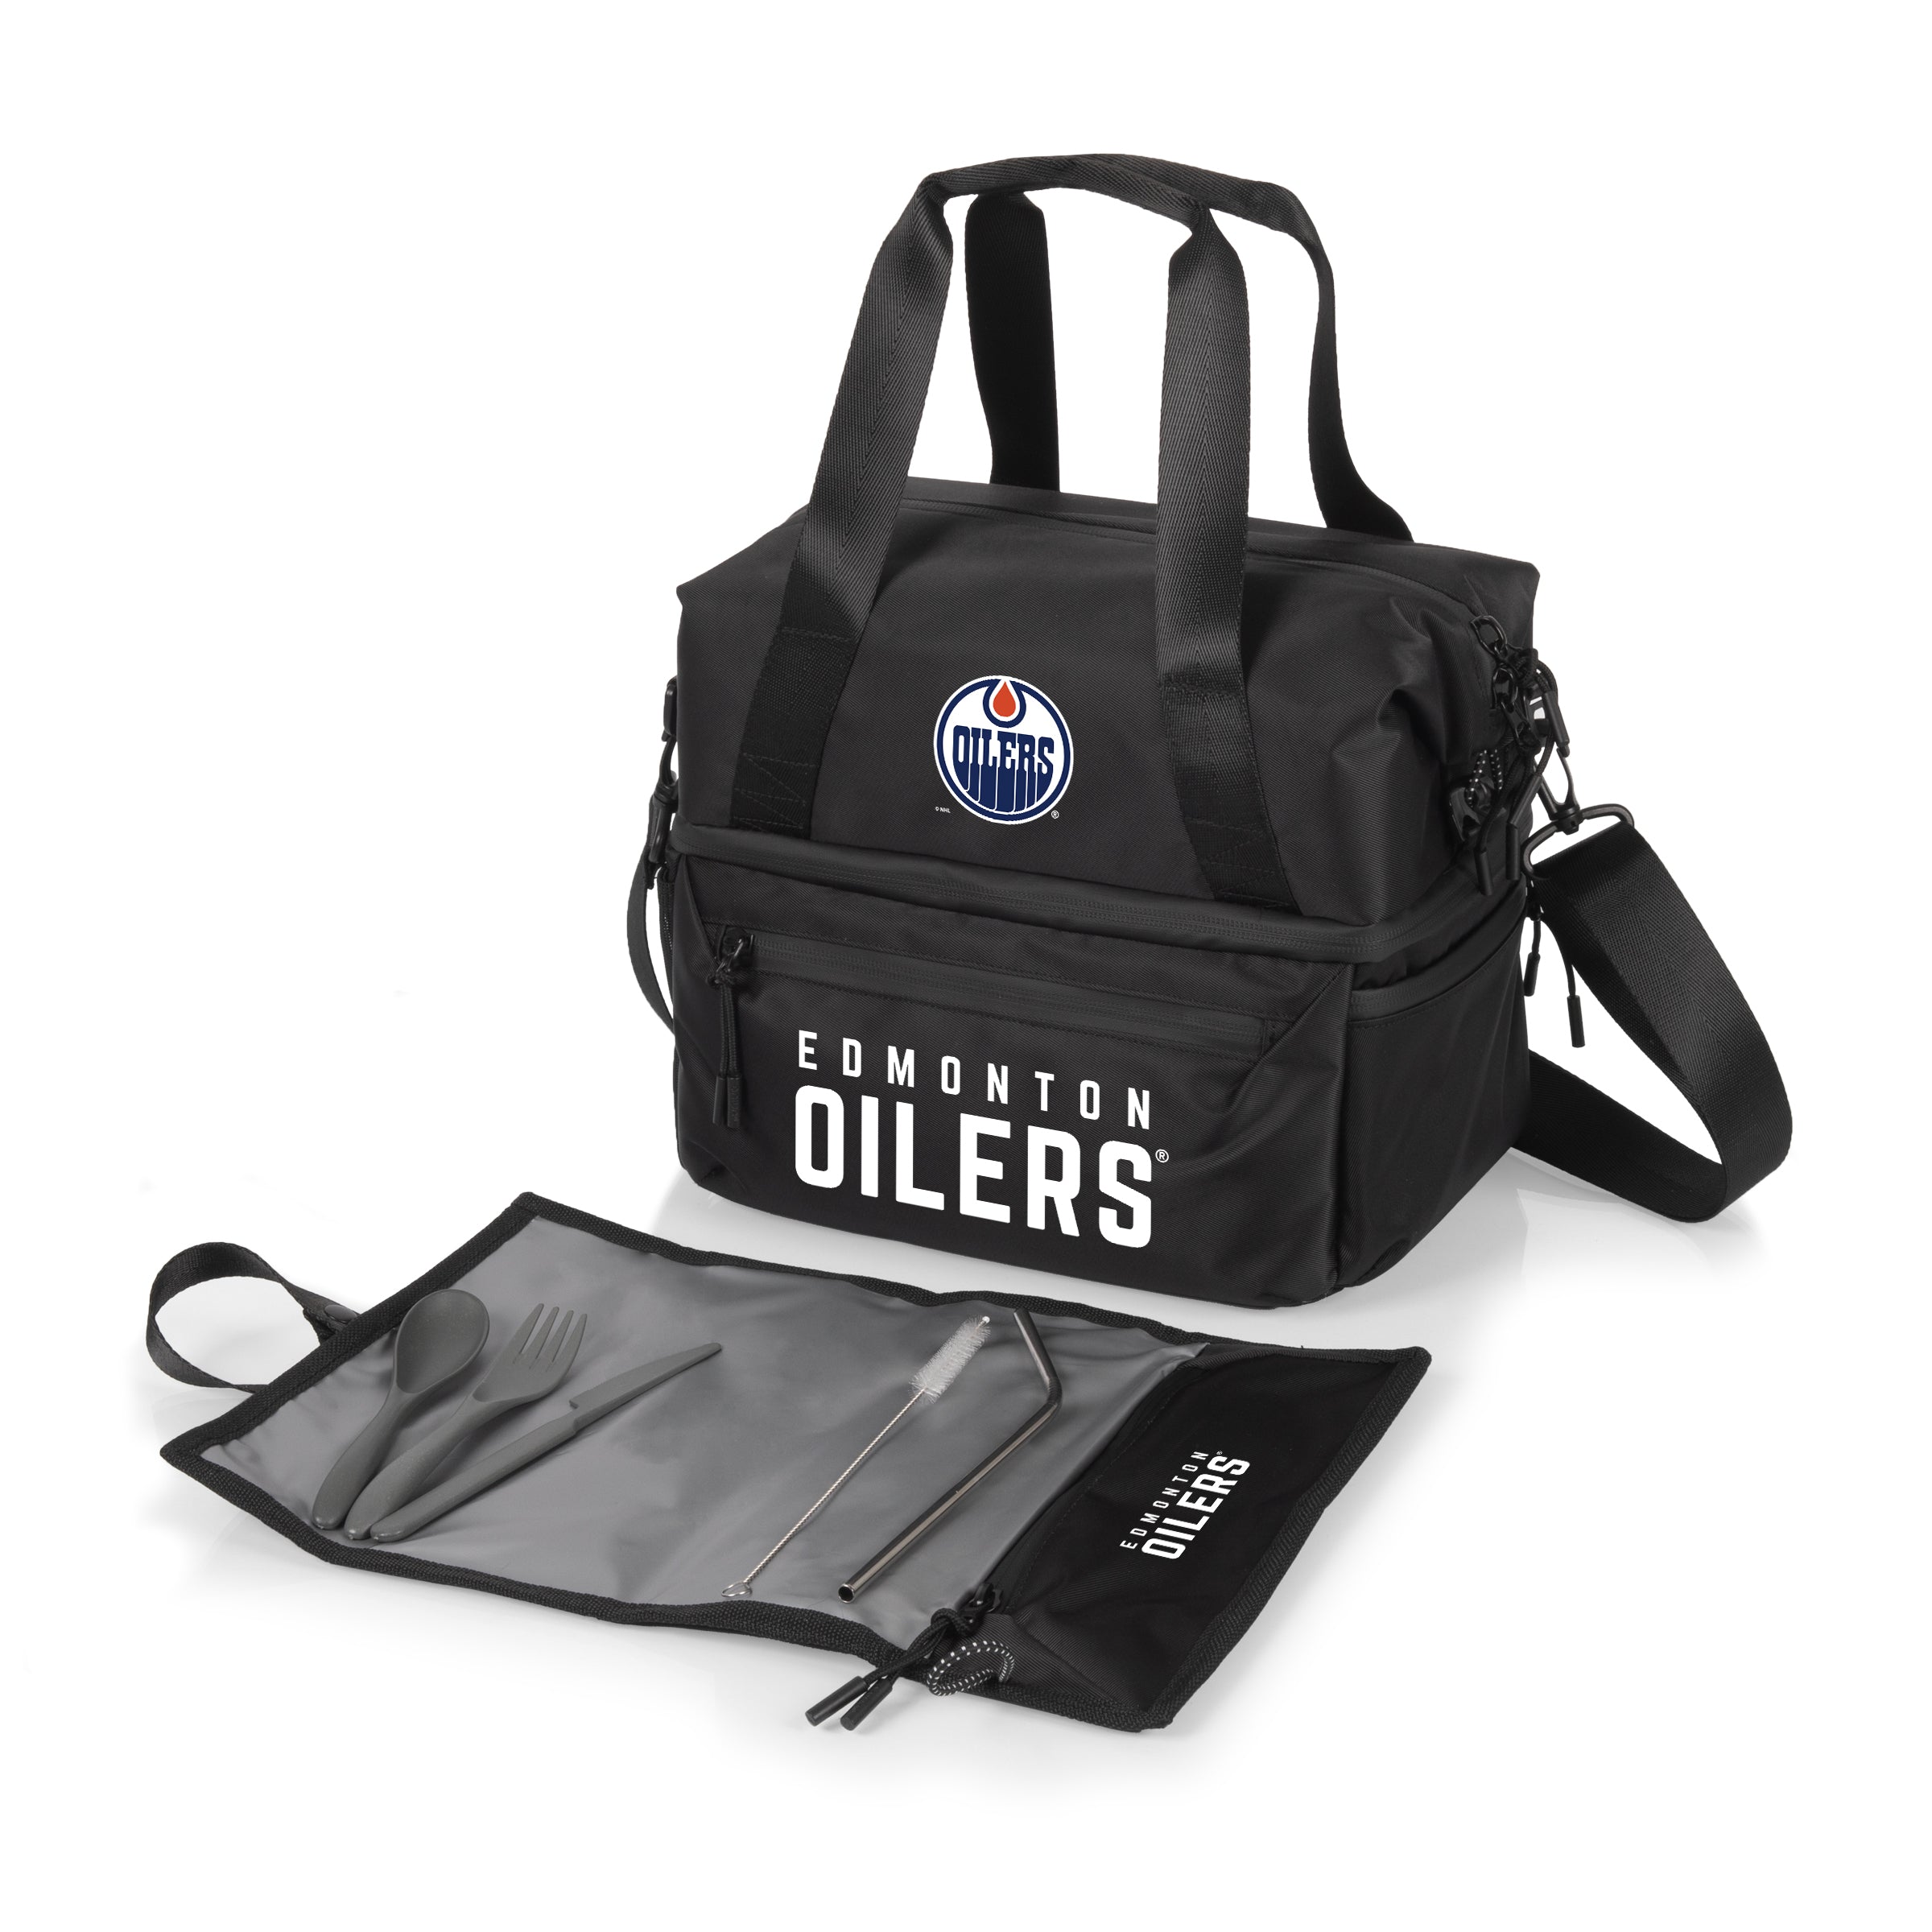 Edmonton Oilers - Tarana Lunch Bag Cooler with Utensils